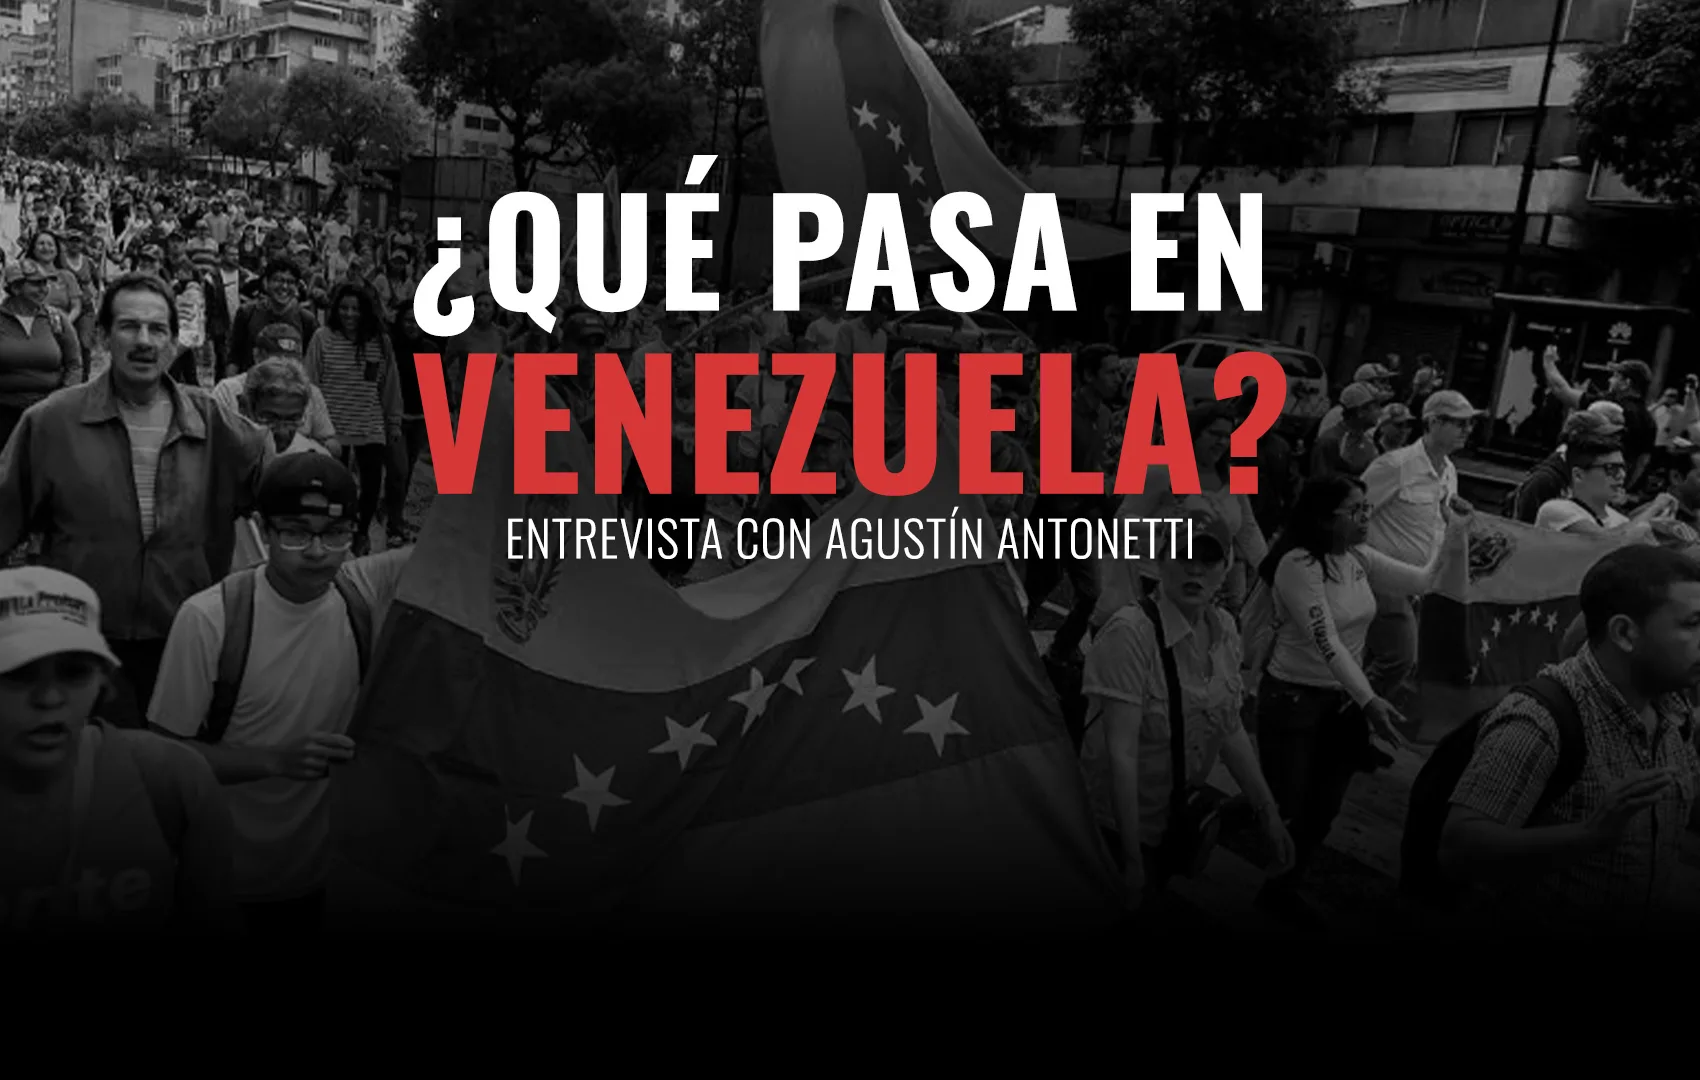 Maldita dictadura: se profundiza la represión en Venezuela